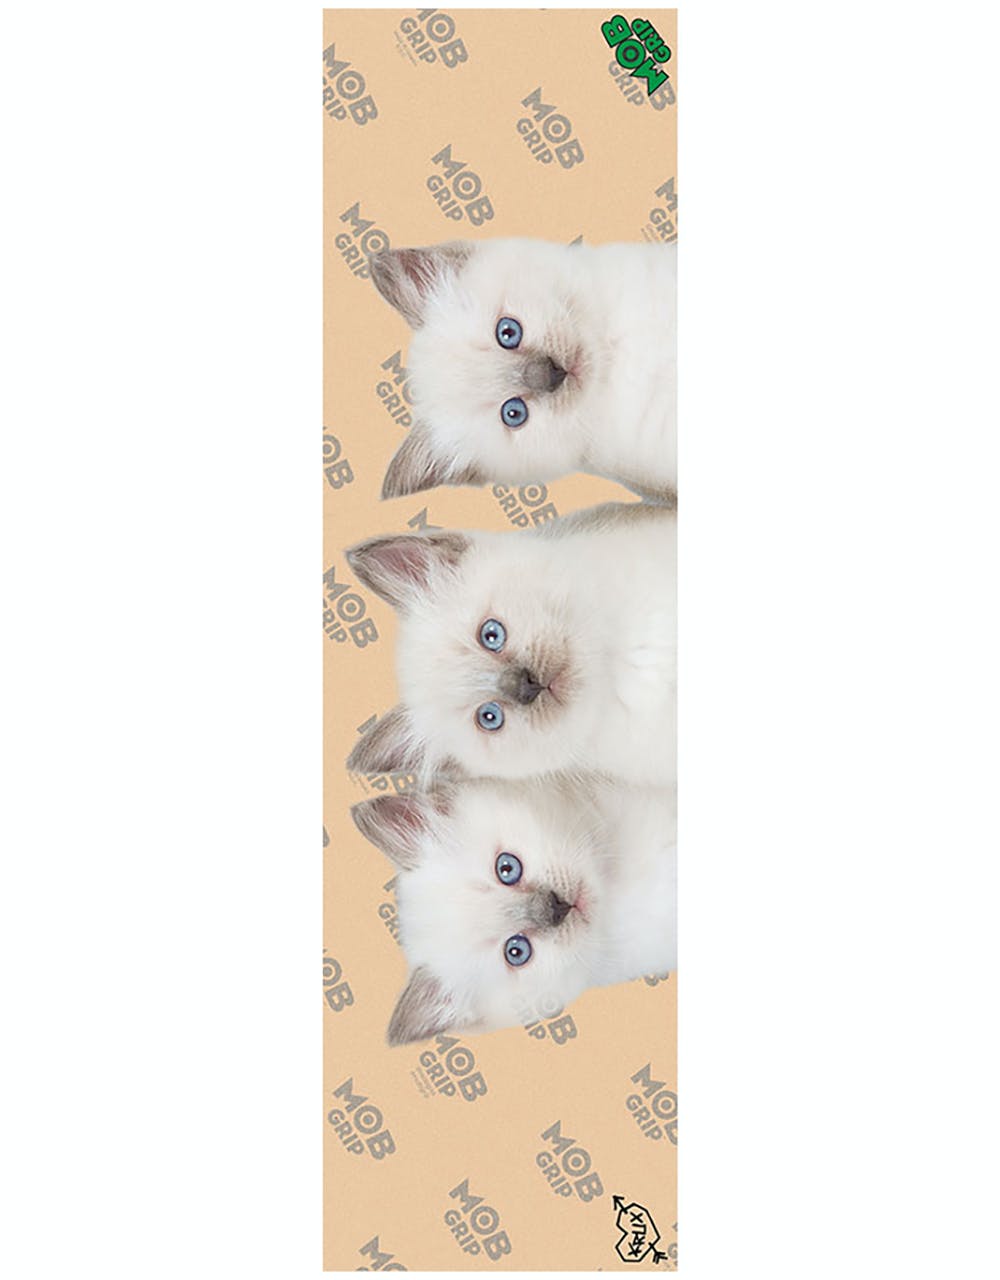 MOB x Krux Kitties 9" Grip Tape Sheet